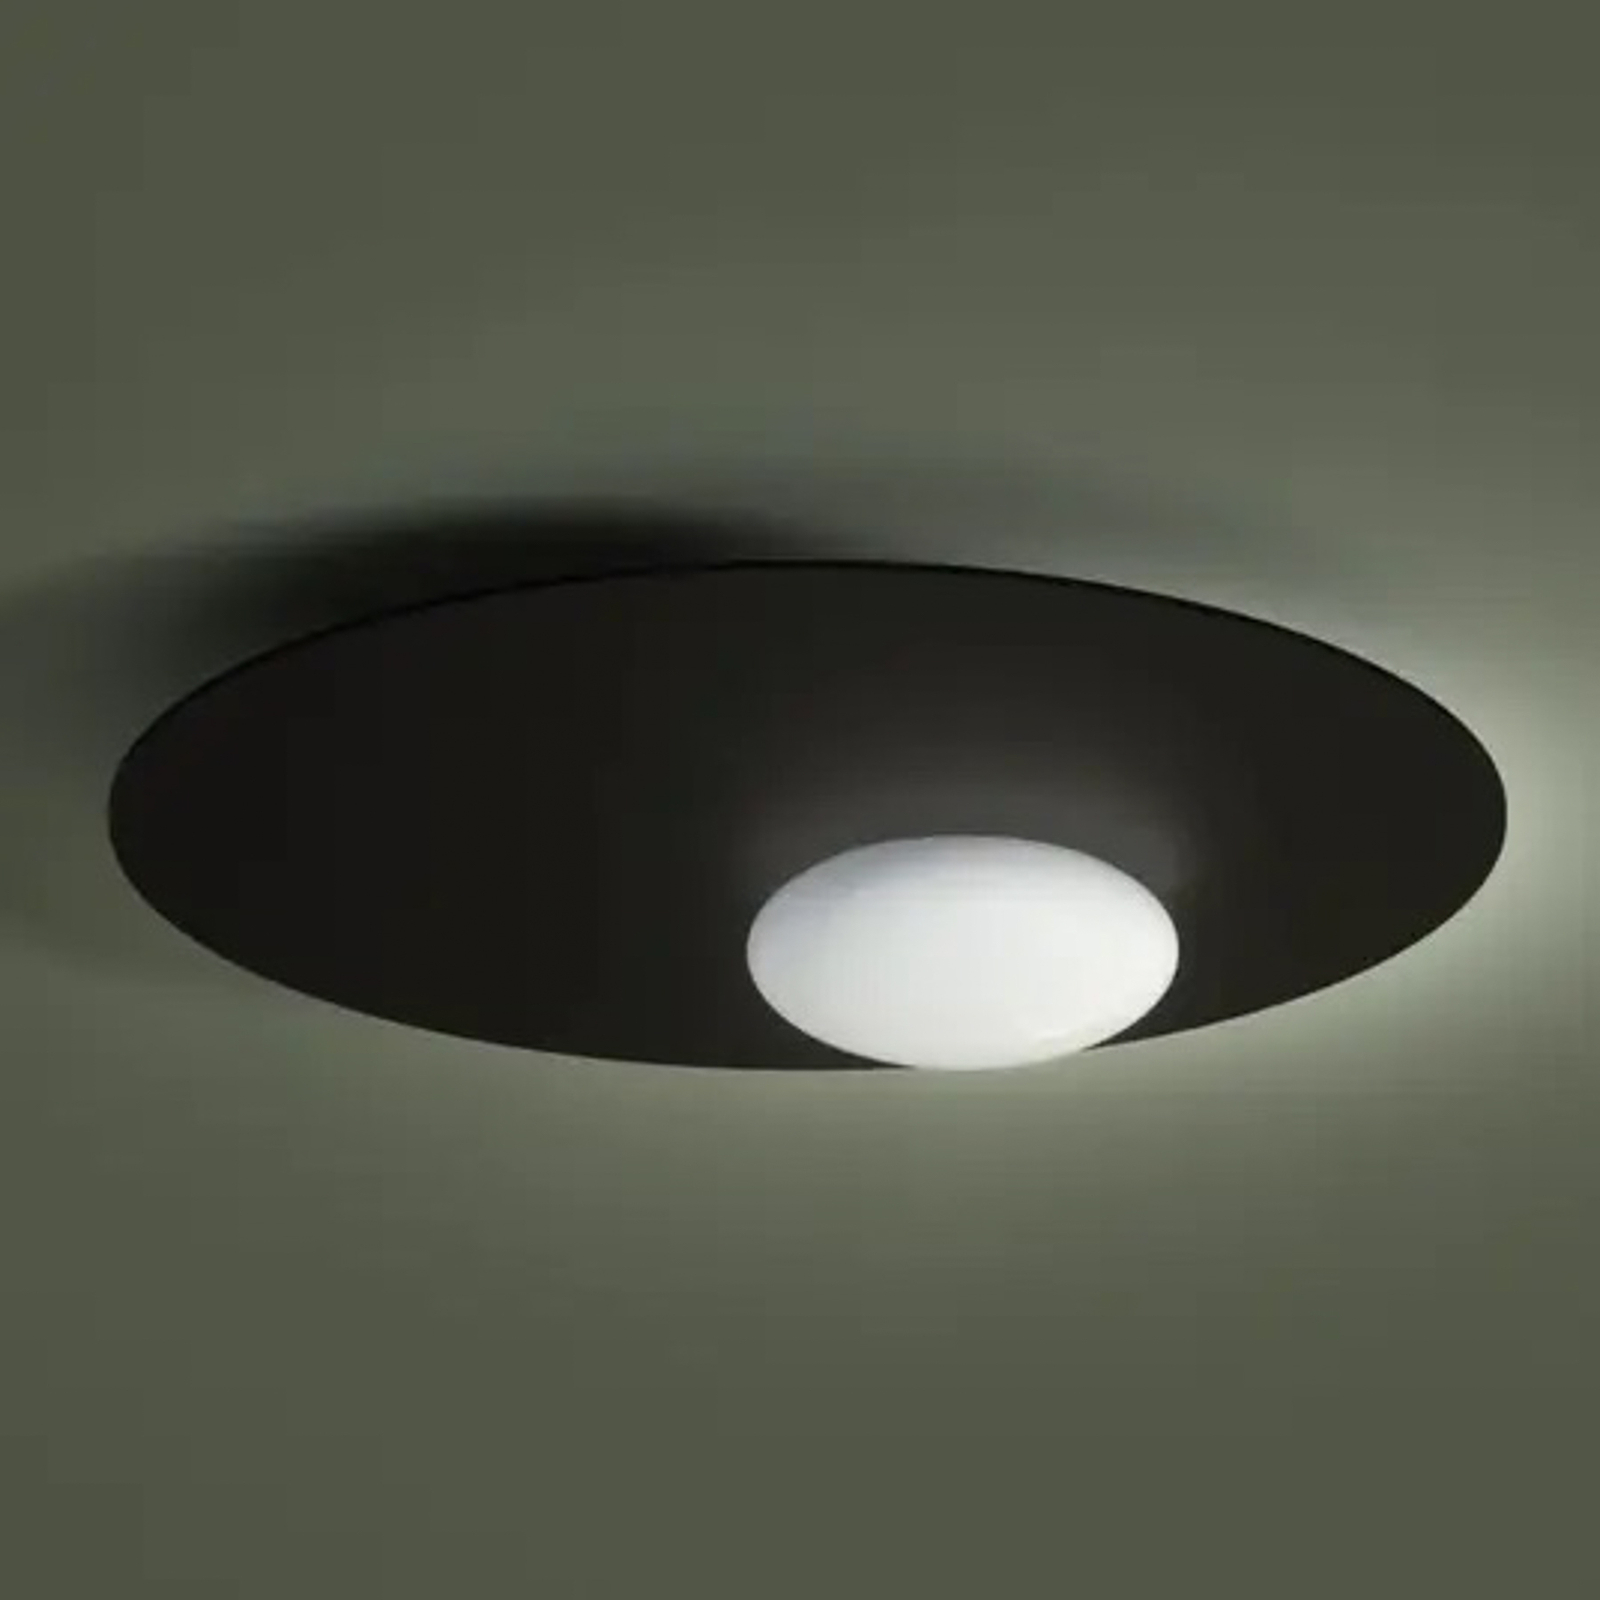 Axolight Kwic LED-kattovalaisin, pronssi, Ø 36 cm